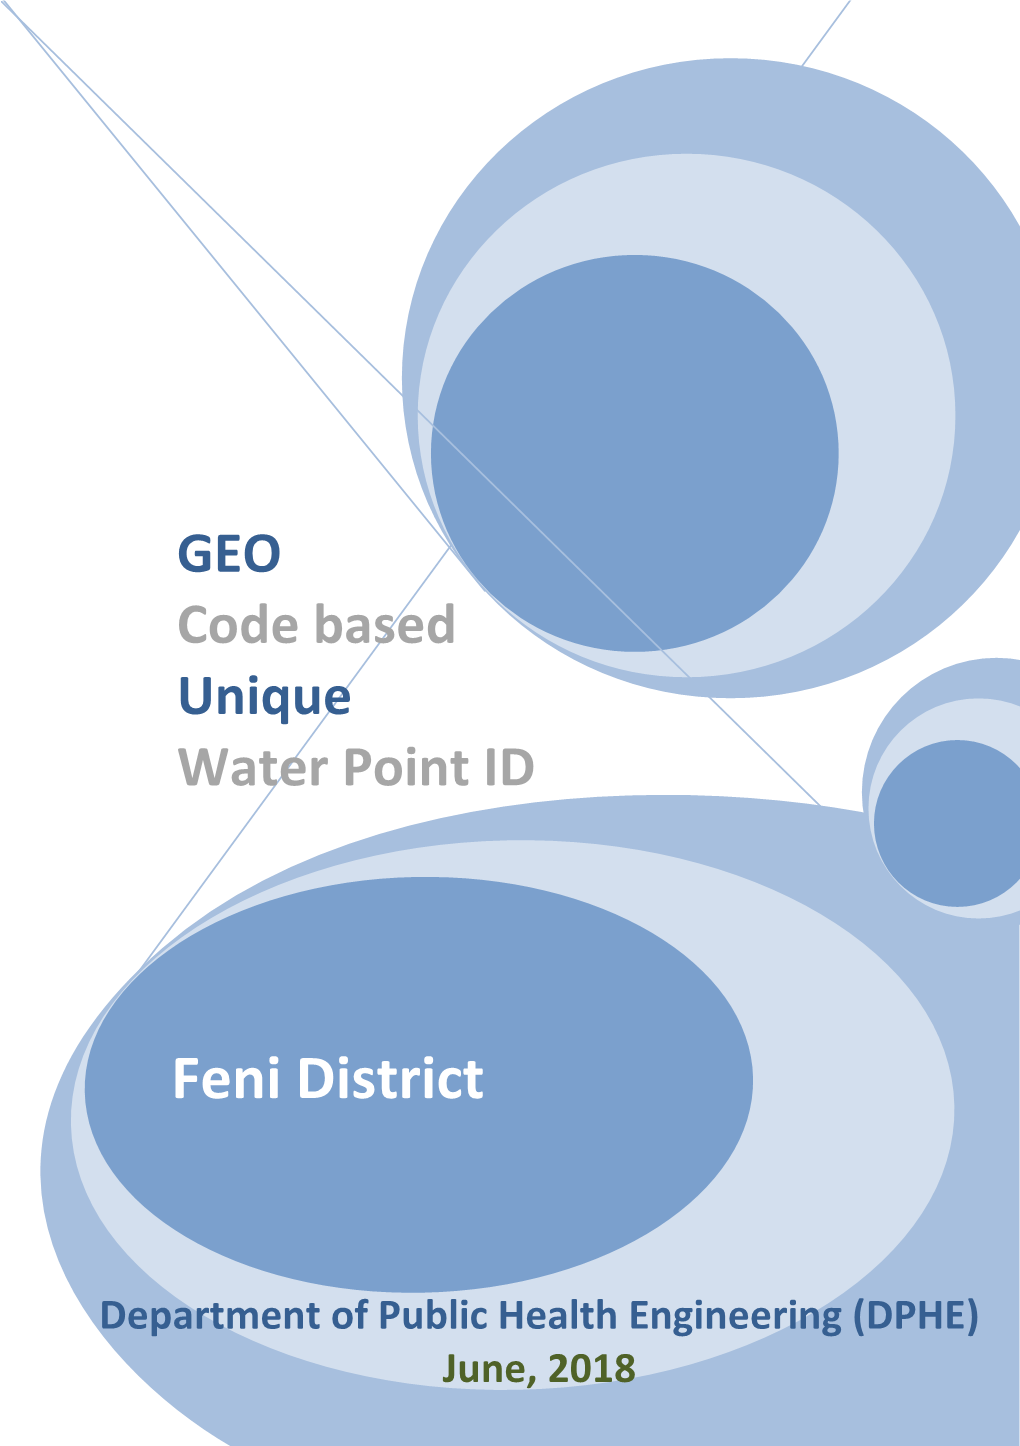 Feni District